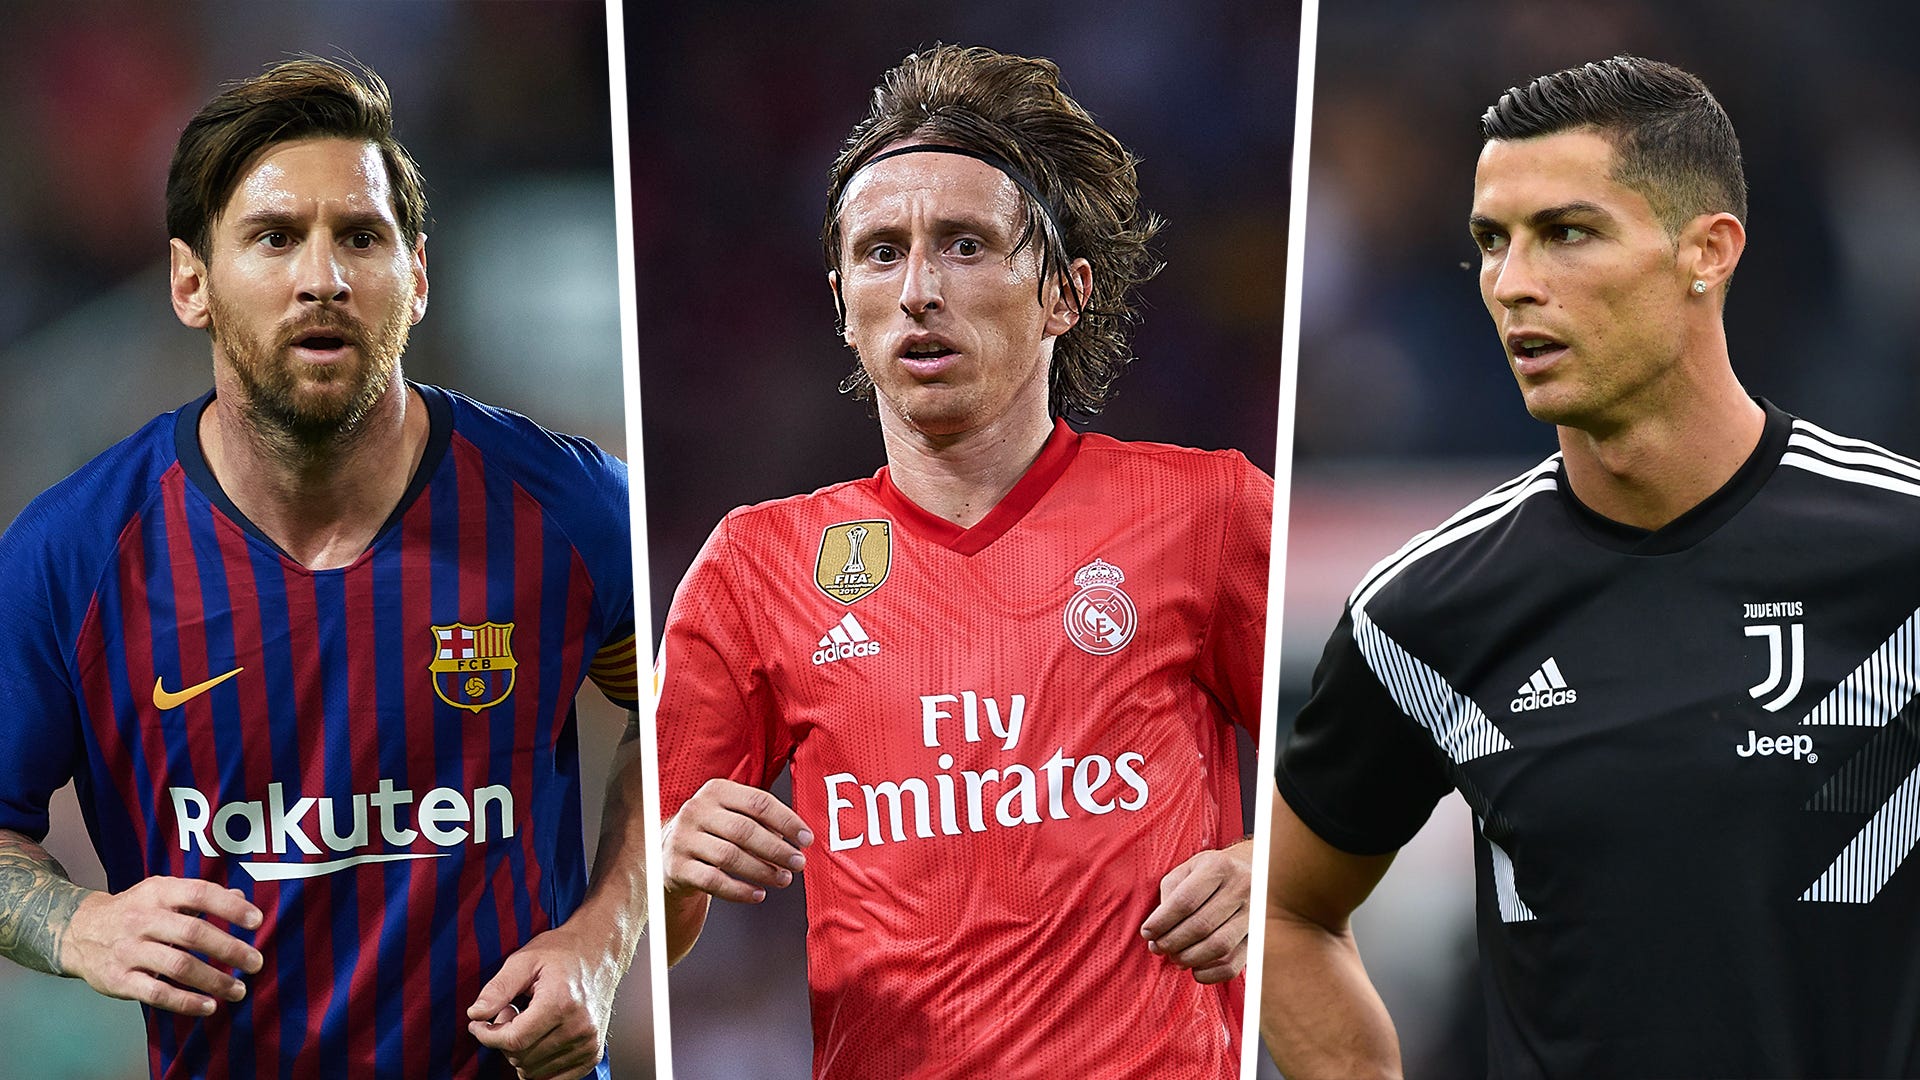 Tận hưởng những khoảnh khắc ghi bàn và những pha kiến tạo tuyệt đẹp của Luka Modric, và xem anh ta sẽ điều khiển trận đấu ra sao. Với những bức ảnh chân thực, bạn có thể đắm mình trong thế giới bóng đá đầy màu sắc và kịch tính.